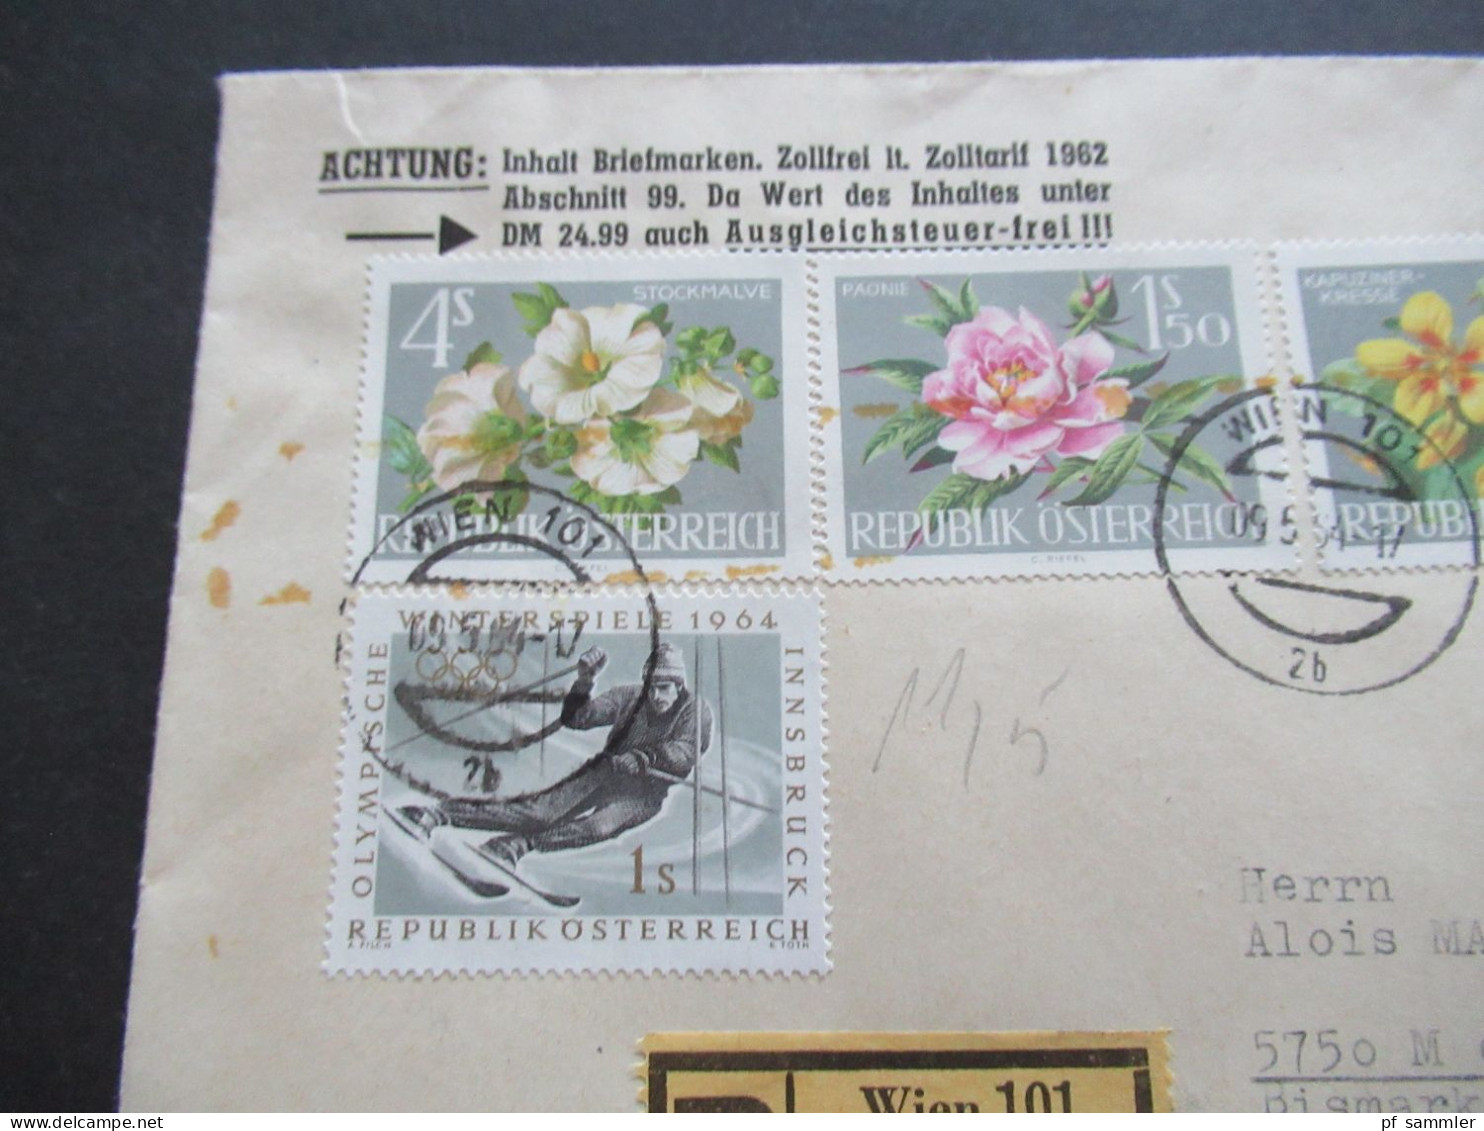 Österreich 1964 MiF Mit 4 Marken Einschreiben Wien 101 Auslandsbrief Nach Menden Sauerland / Inhalt Zollfrei Sabeff - Briefe U. Dokumente